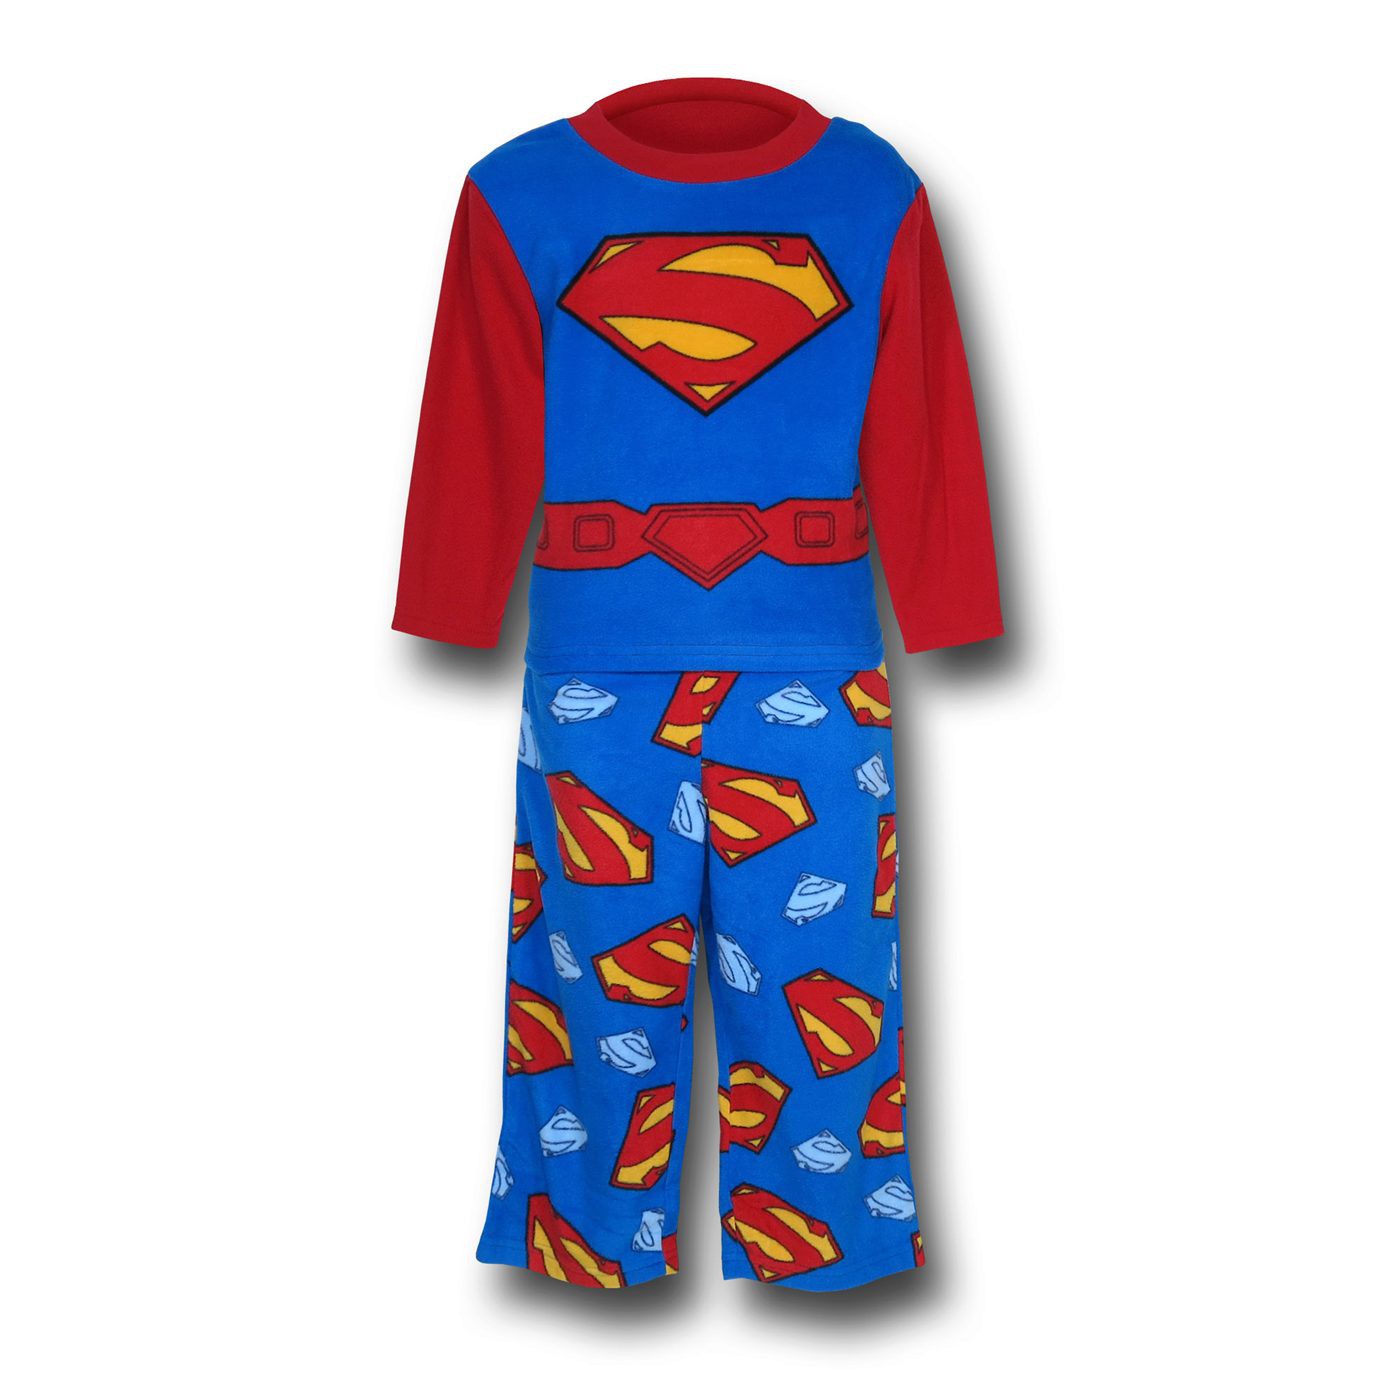 Superman Man of Steel Costume Top Kids Fleece Pajamas